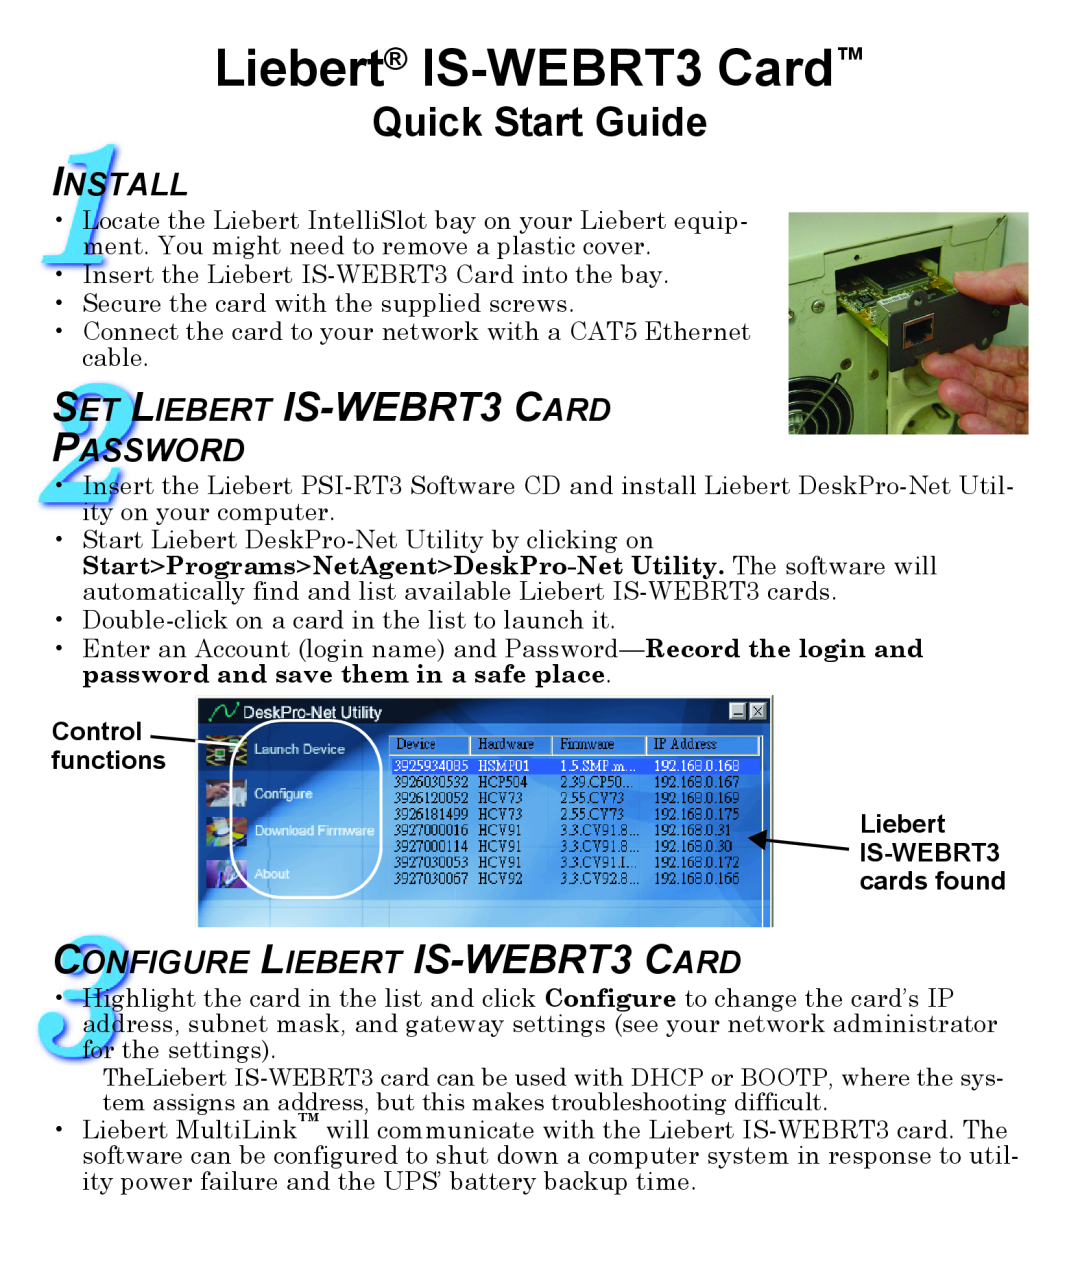 Liebert quick start Control functions Liebert IS-WEBRT3 cards found, Liebert IS-WEBRT3 Card, Quick Start Guide, Install 